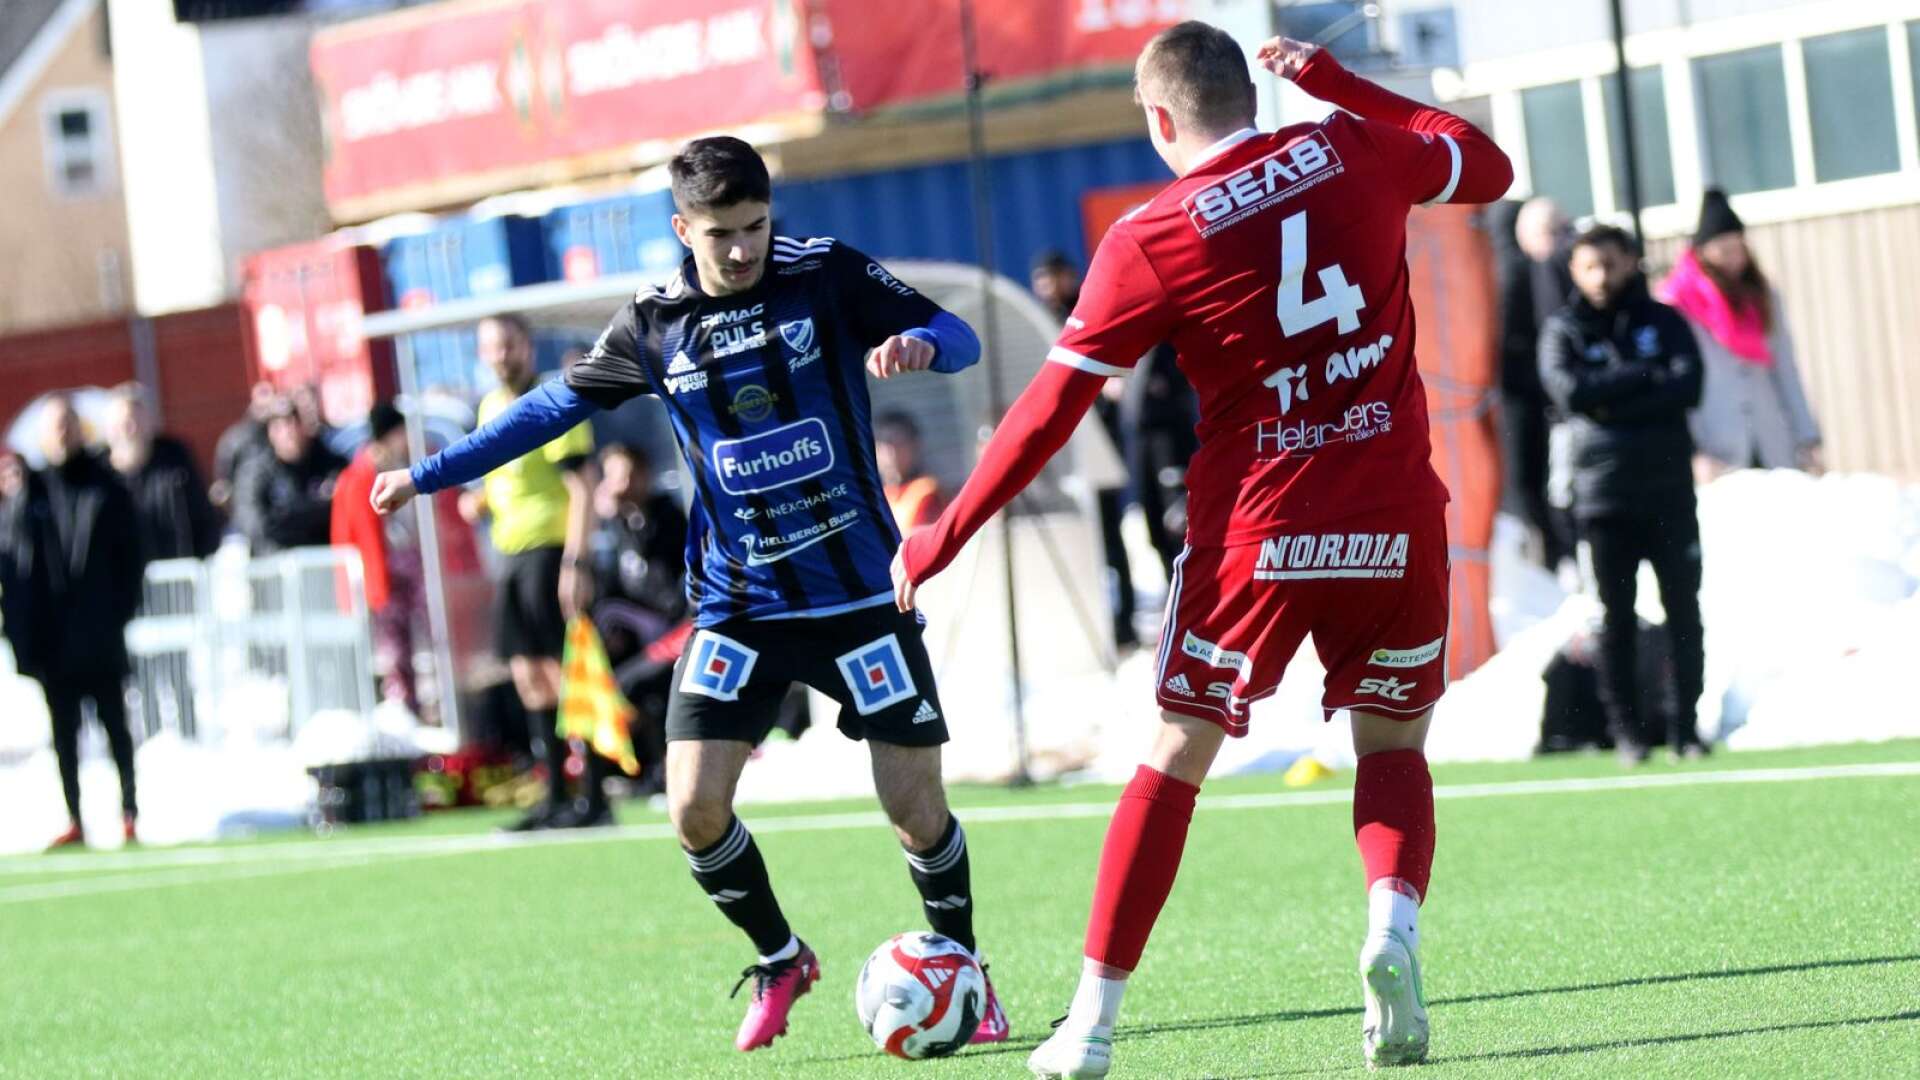 Lawan Homi byttes in. Tackade förtroendet genom att sänka Vänersborgs FK. (Arkivbild)